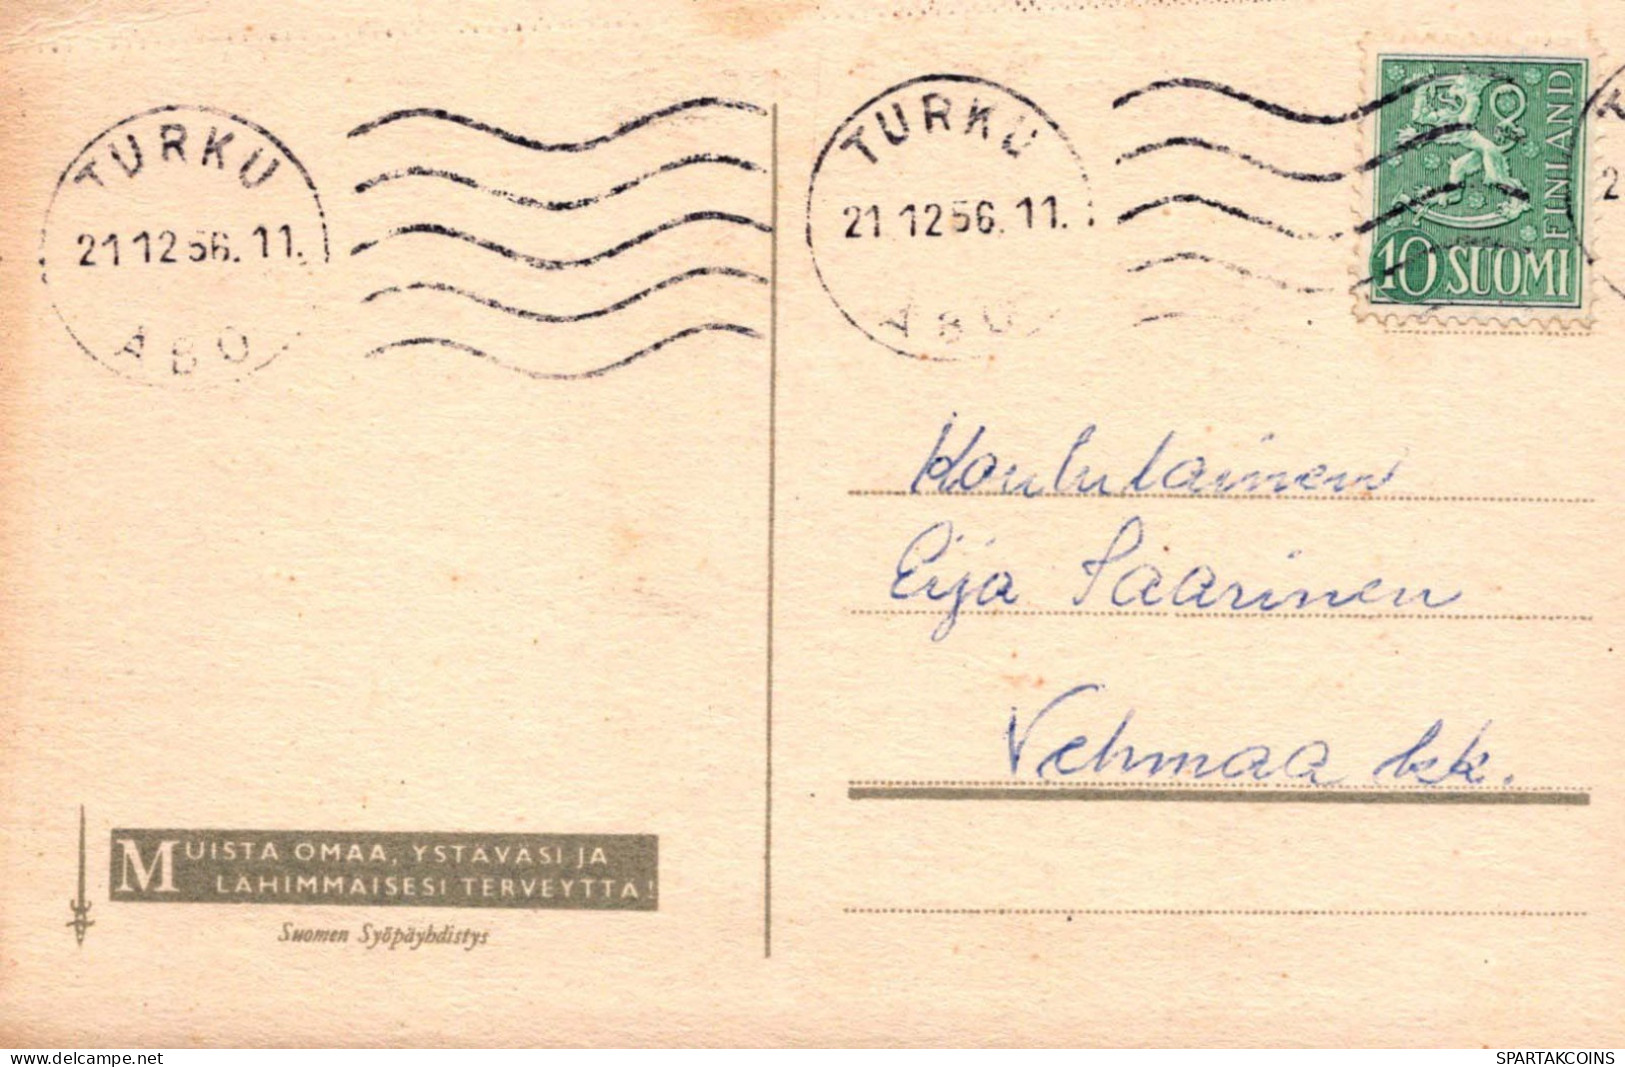 Bonne Année Noël GNOME Vintage Carte Postale CPSMPF #PKD233.FR - New Year